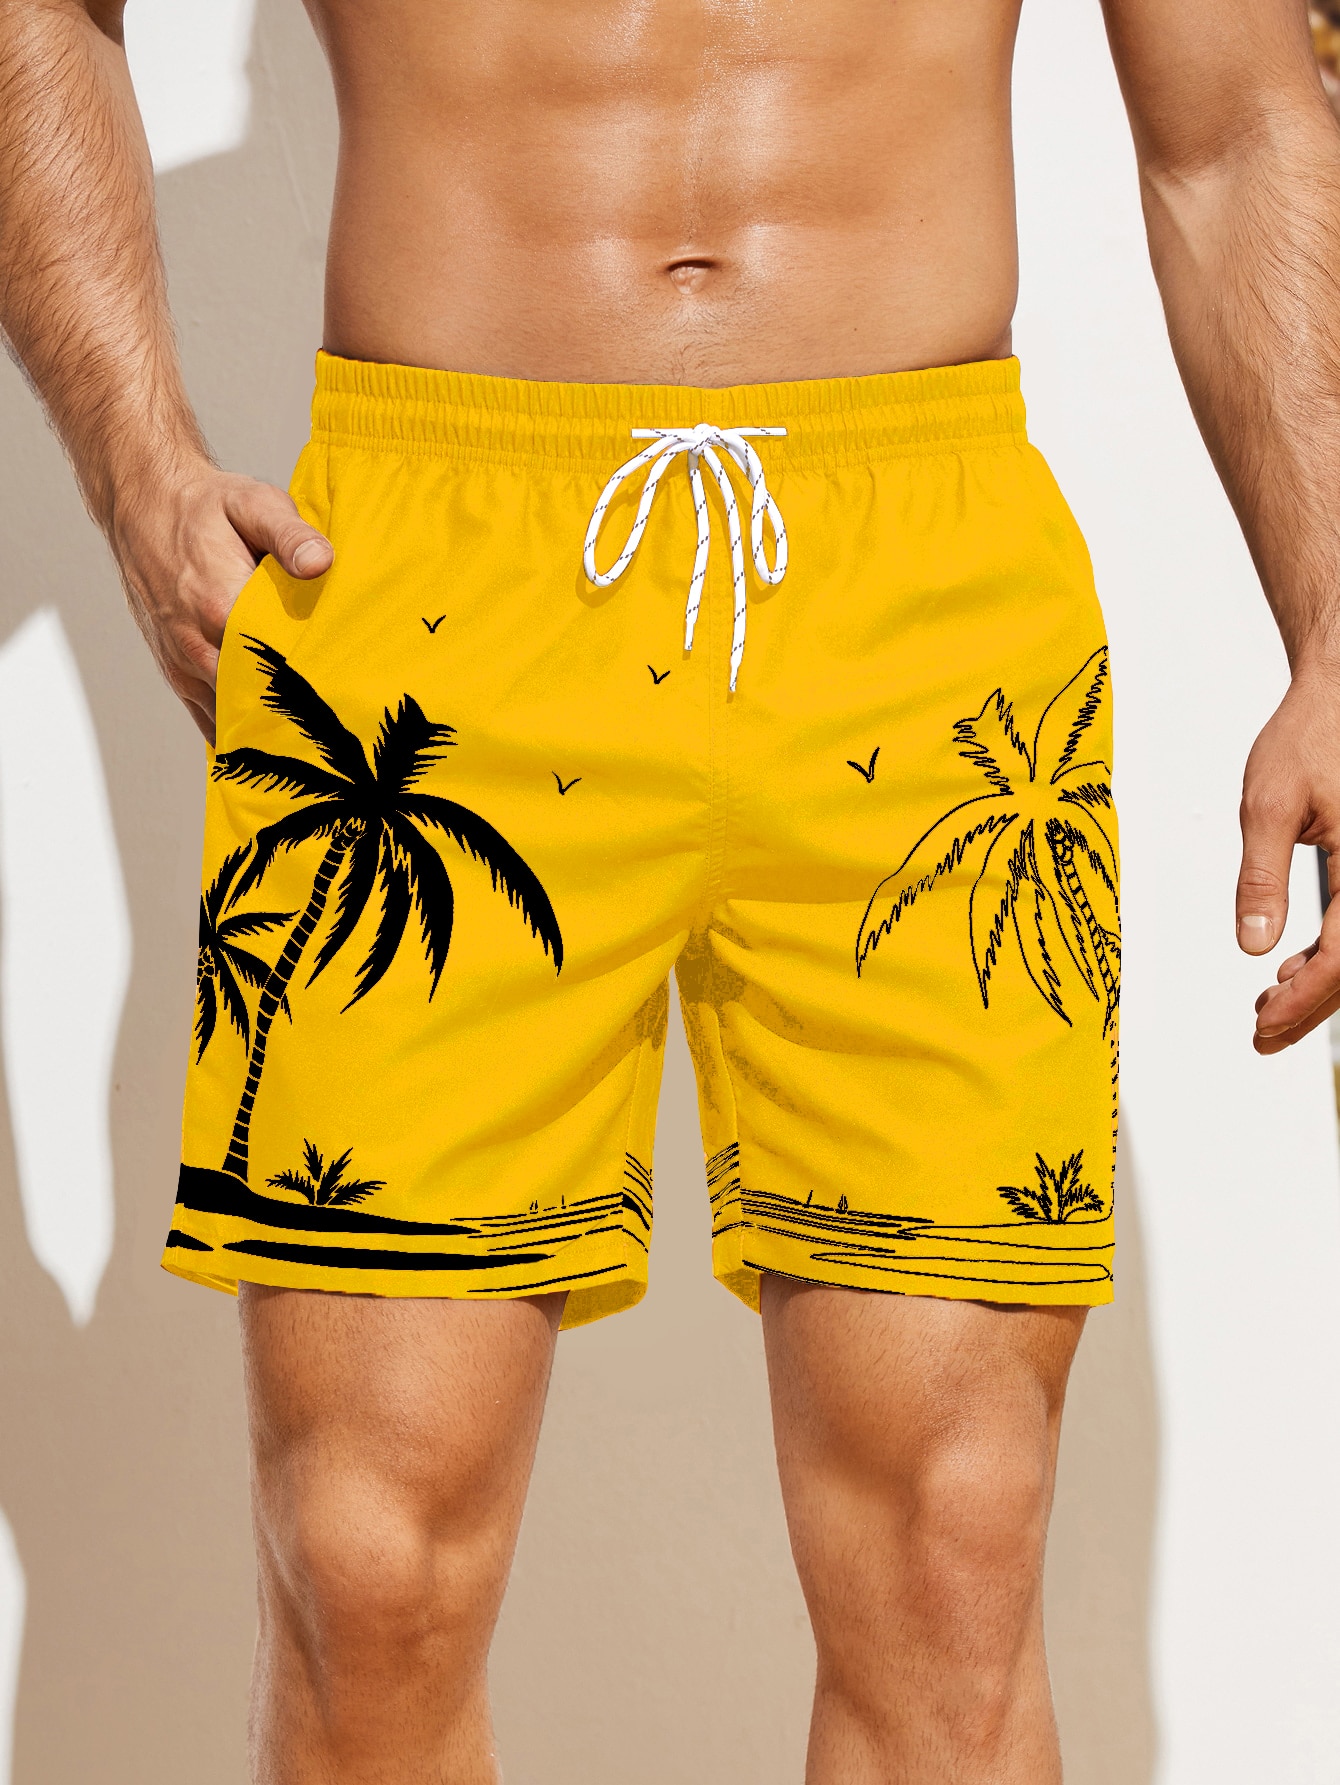 цена Мужские пляжные шорты с принтом пальм Manfinity, горчично-желтый